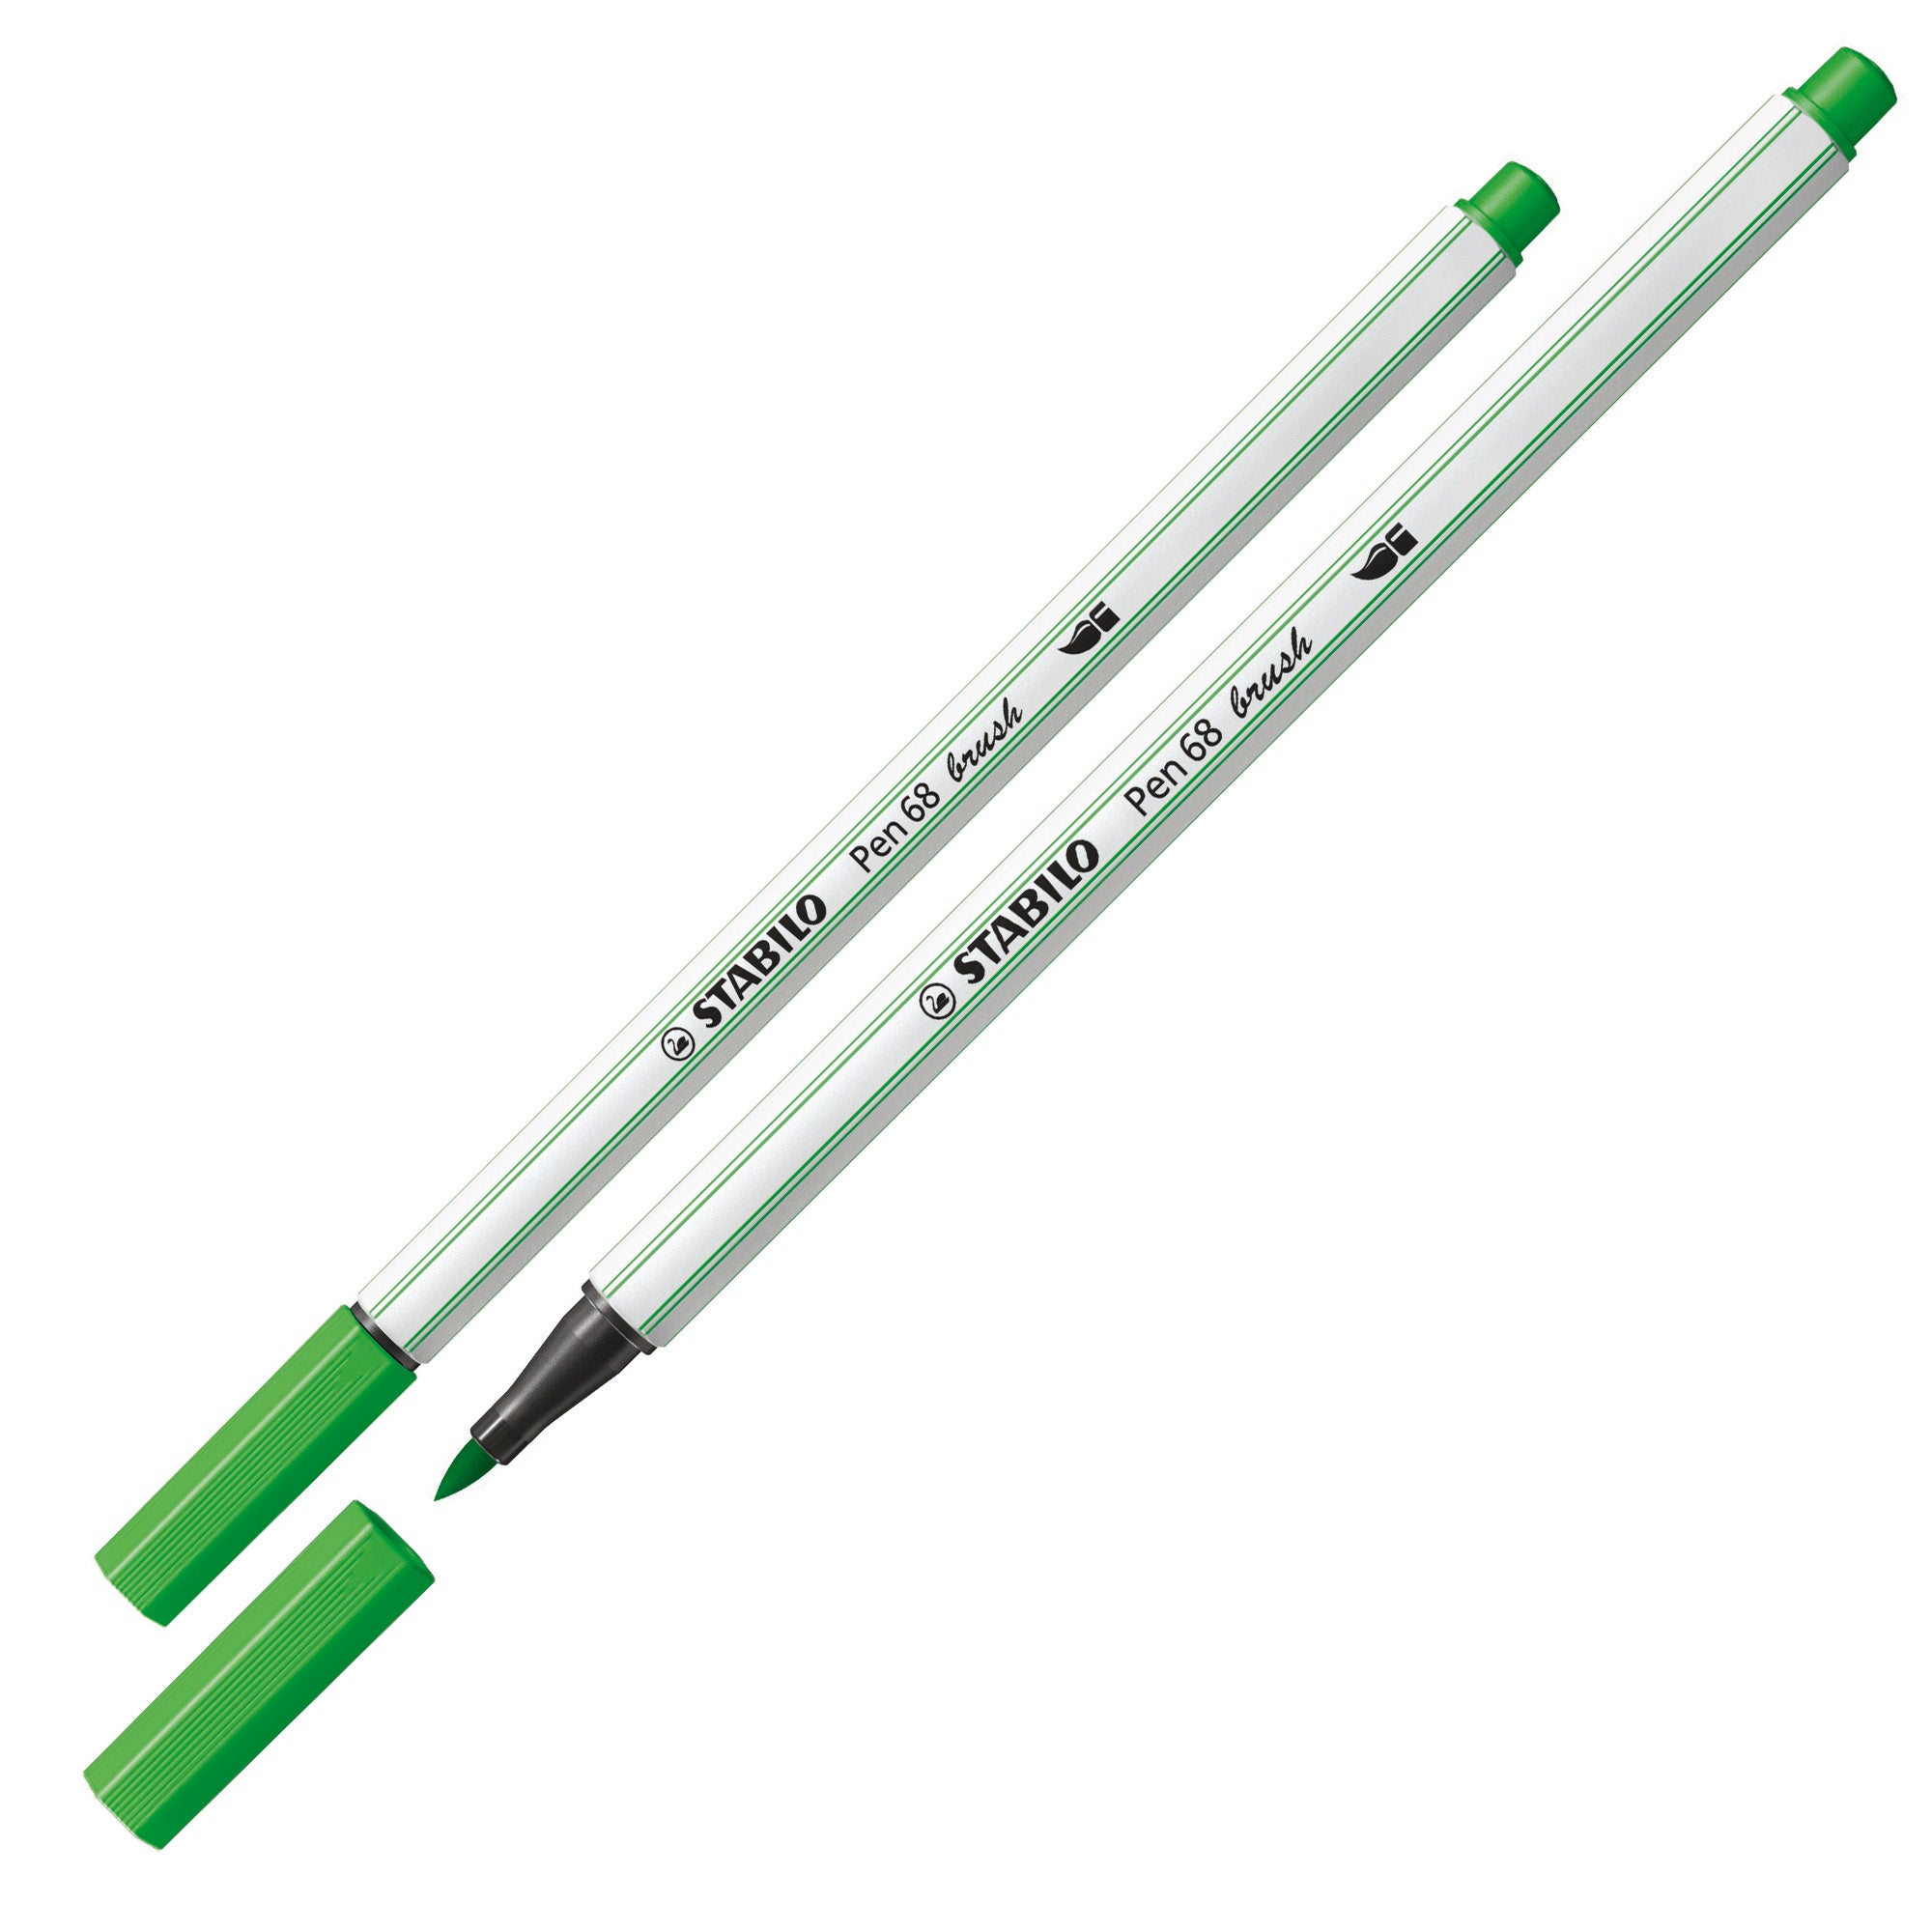 stabilo-astuccio-30-pennarelli-pen-68-brush-arty-line